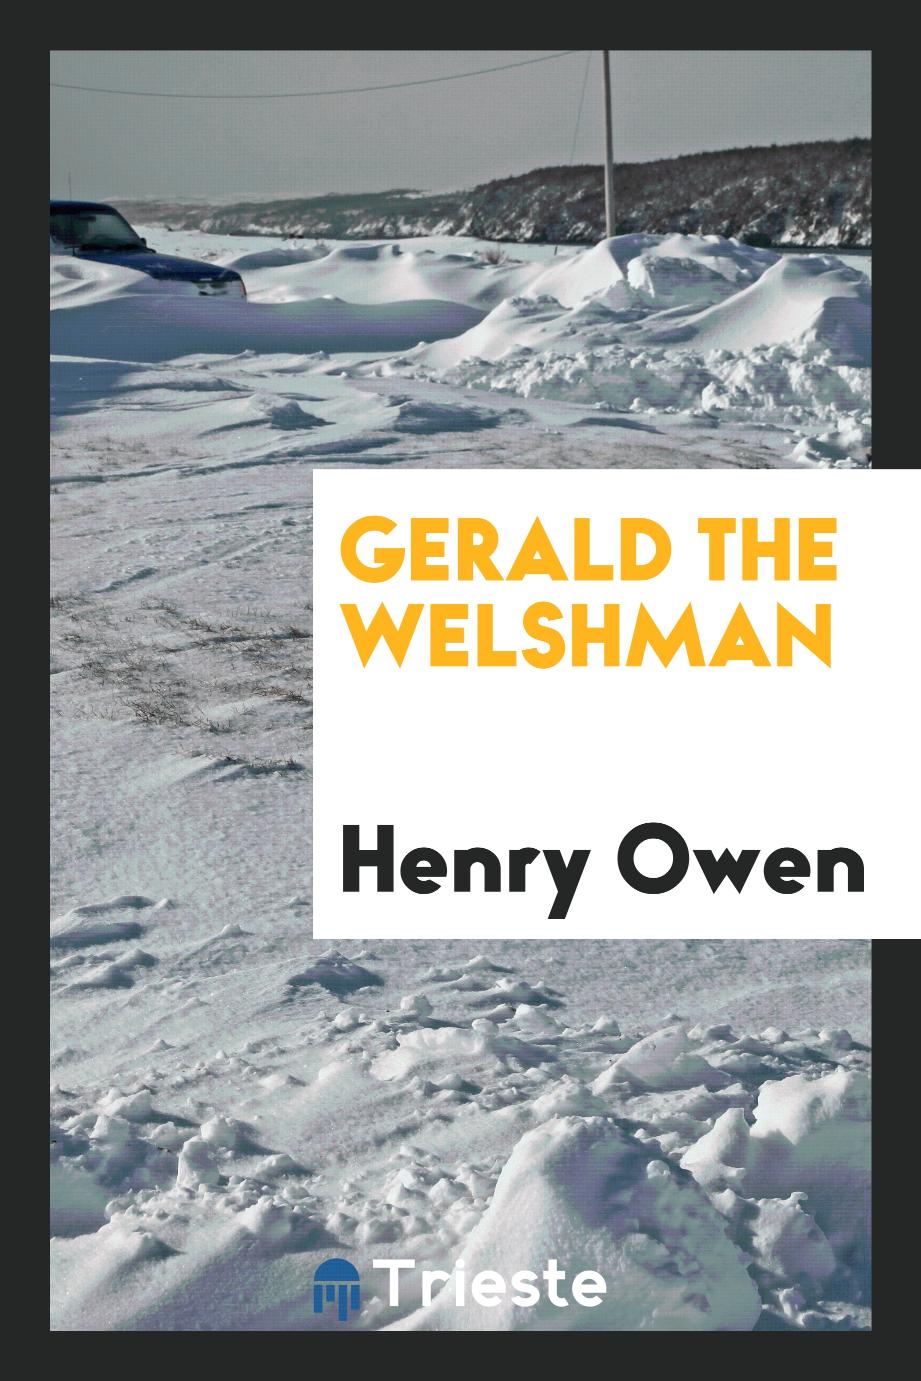 Gerald the Welshman